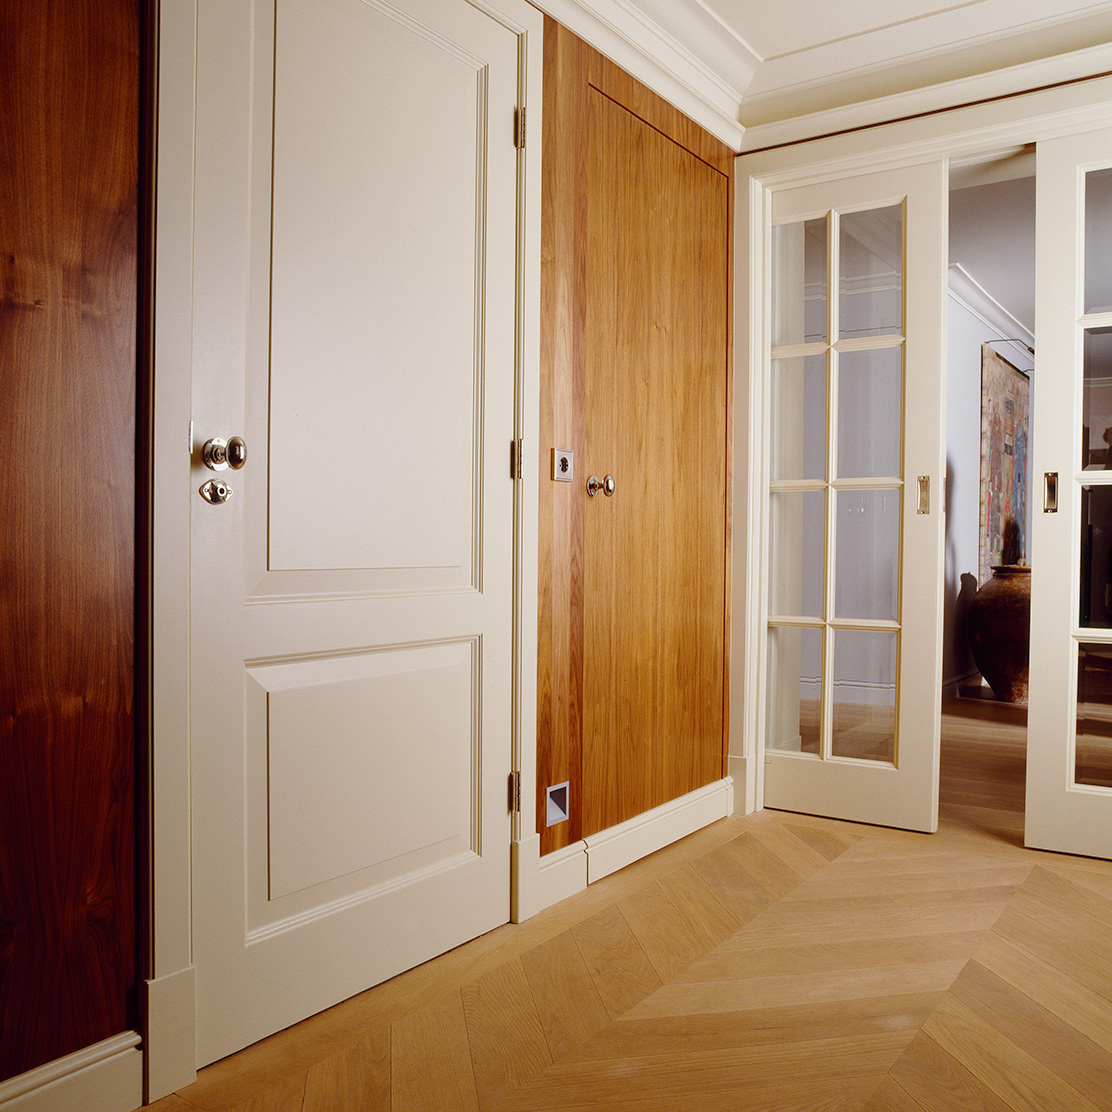 Bouwen Omringd prinses Luxe binnendeur laten maken? Exclusieve deuren op maat | Vonder